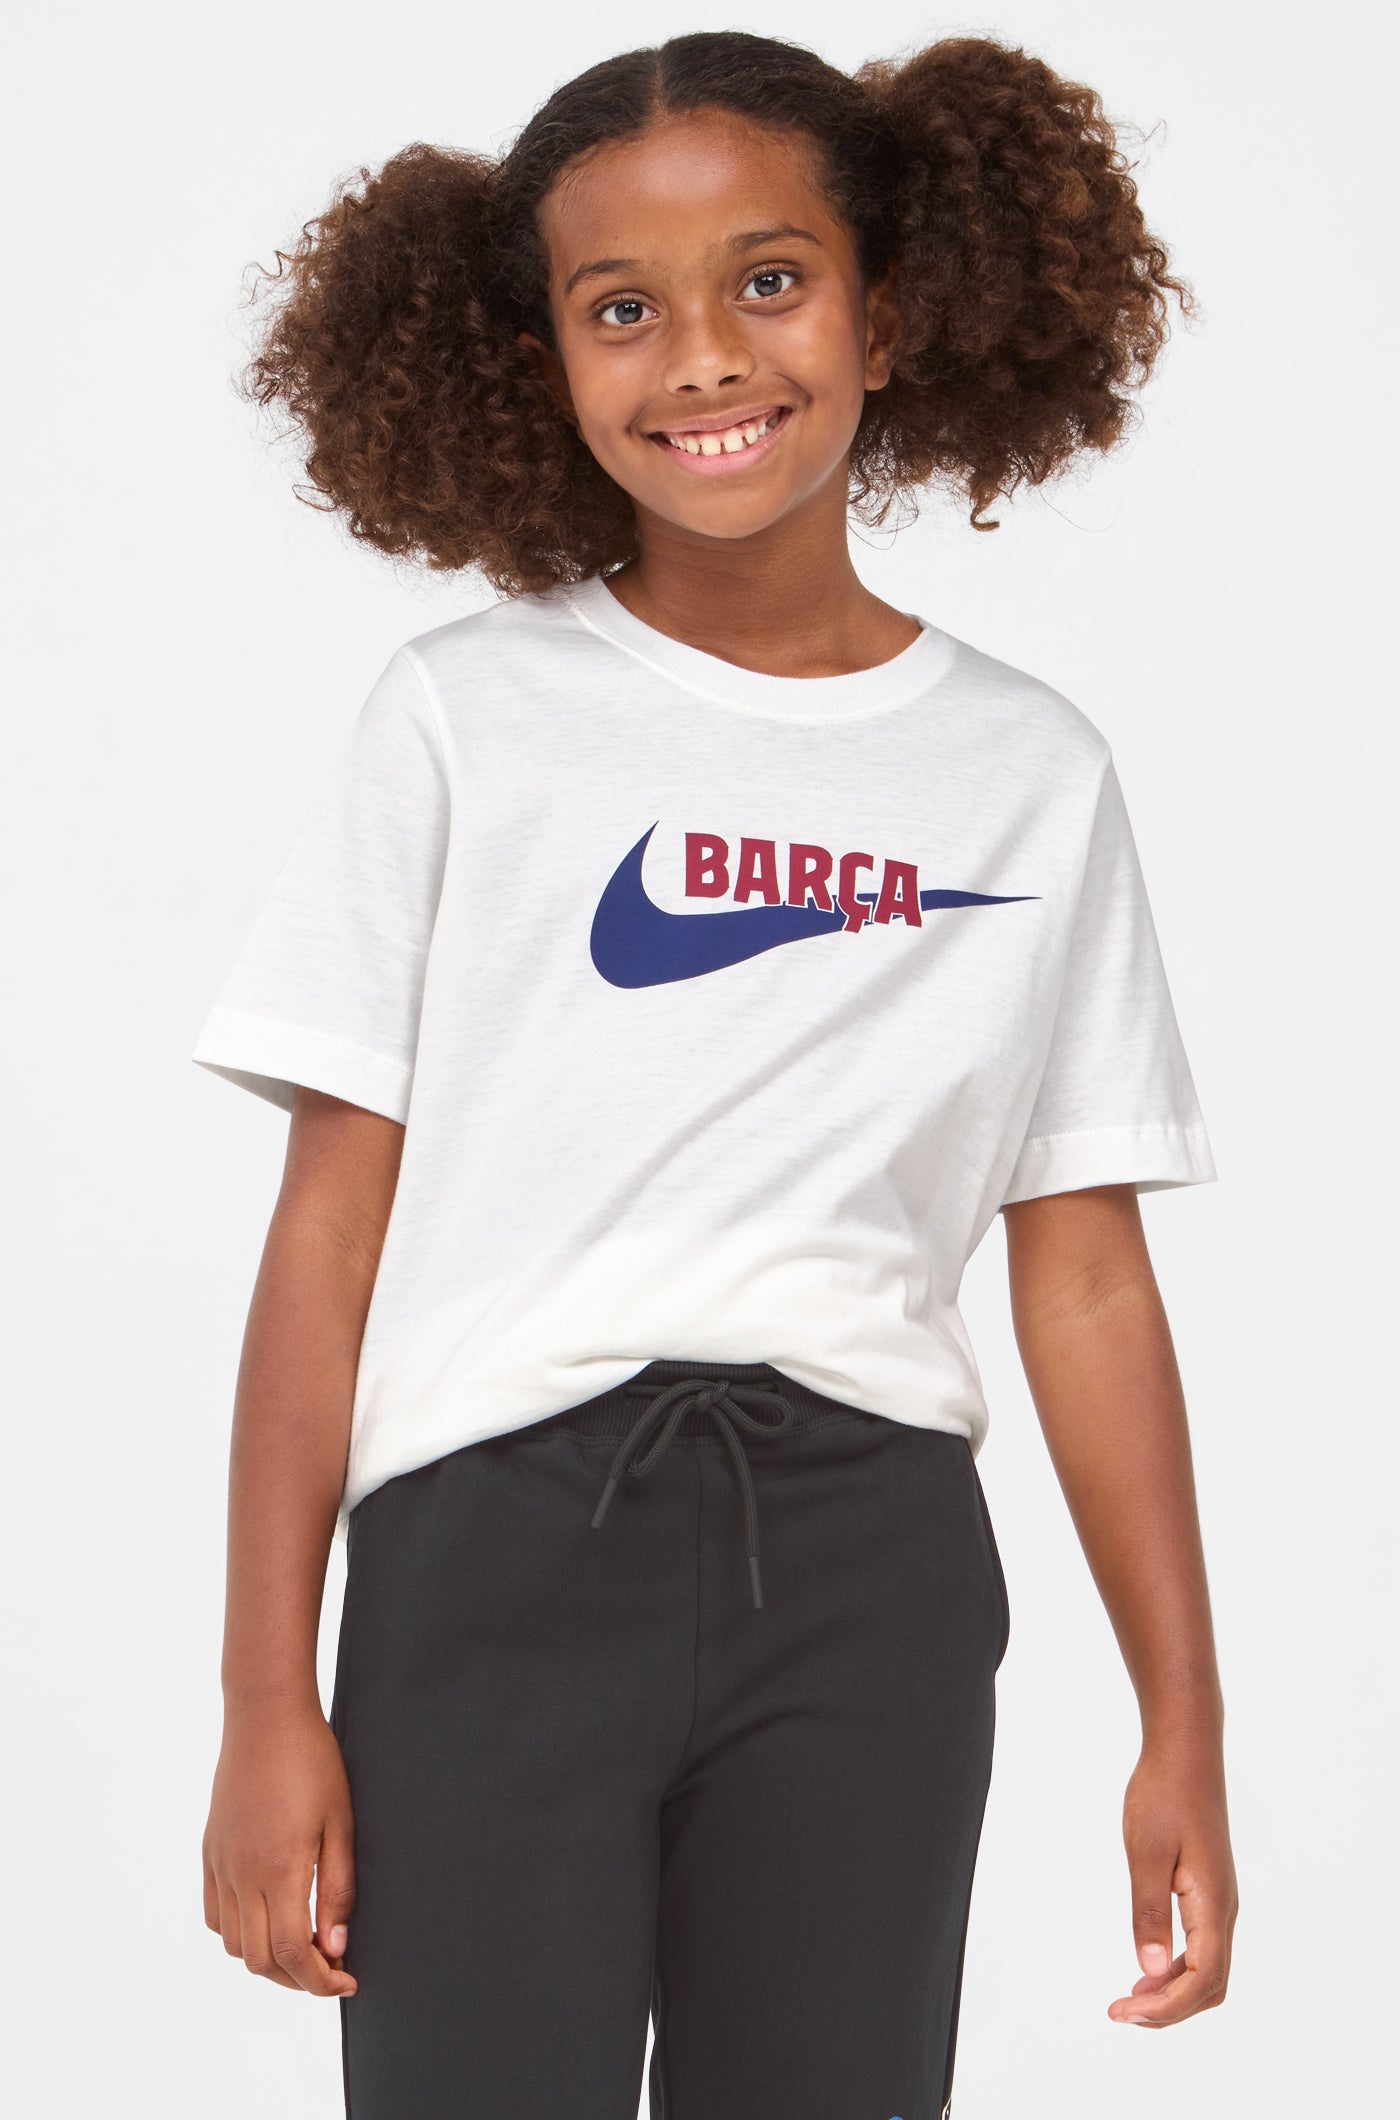 Camiseta del Barcelona Original Nike para Niños